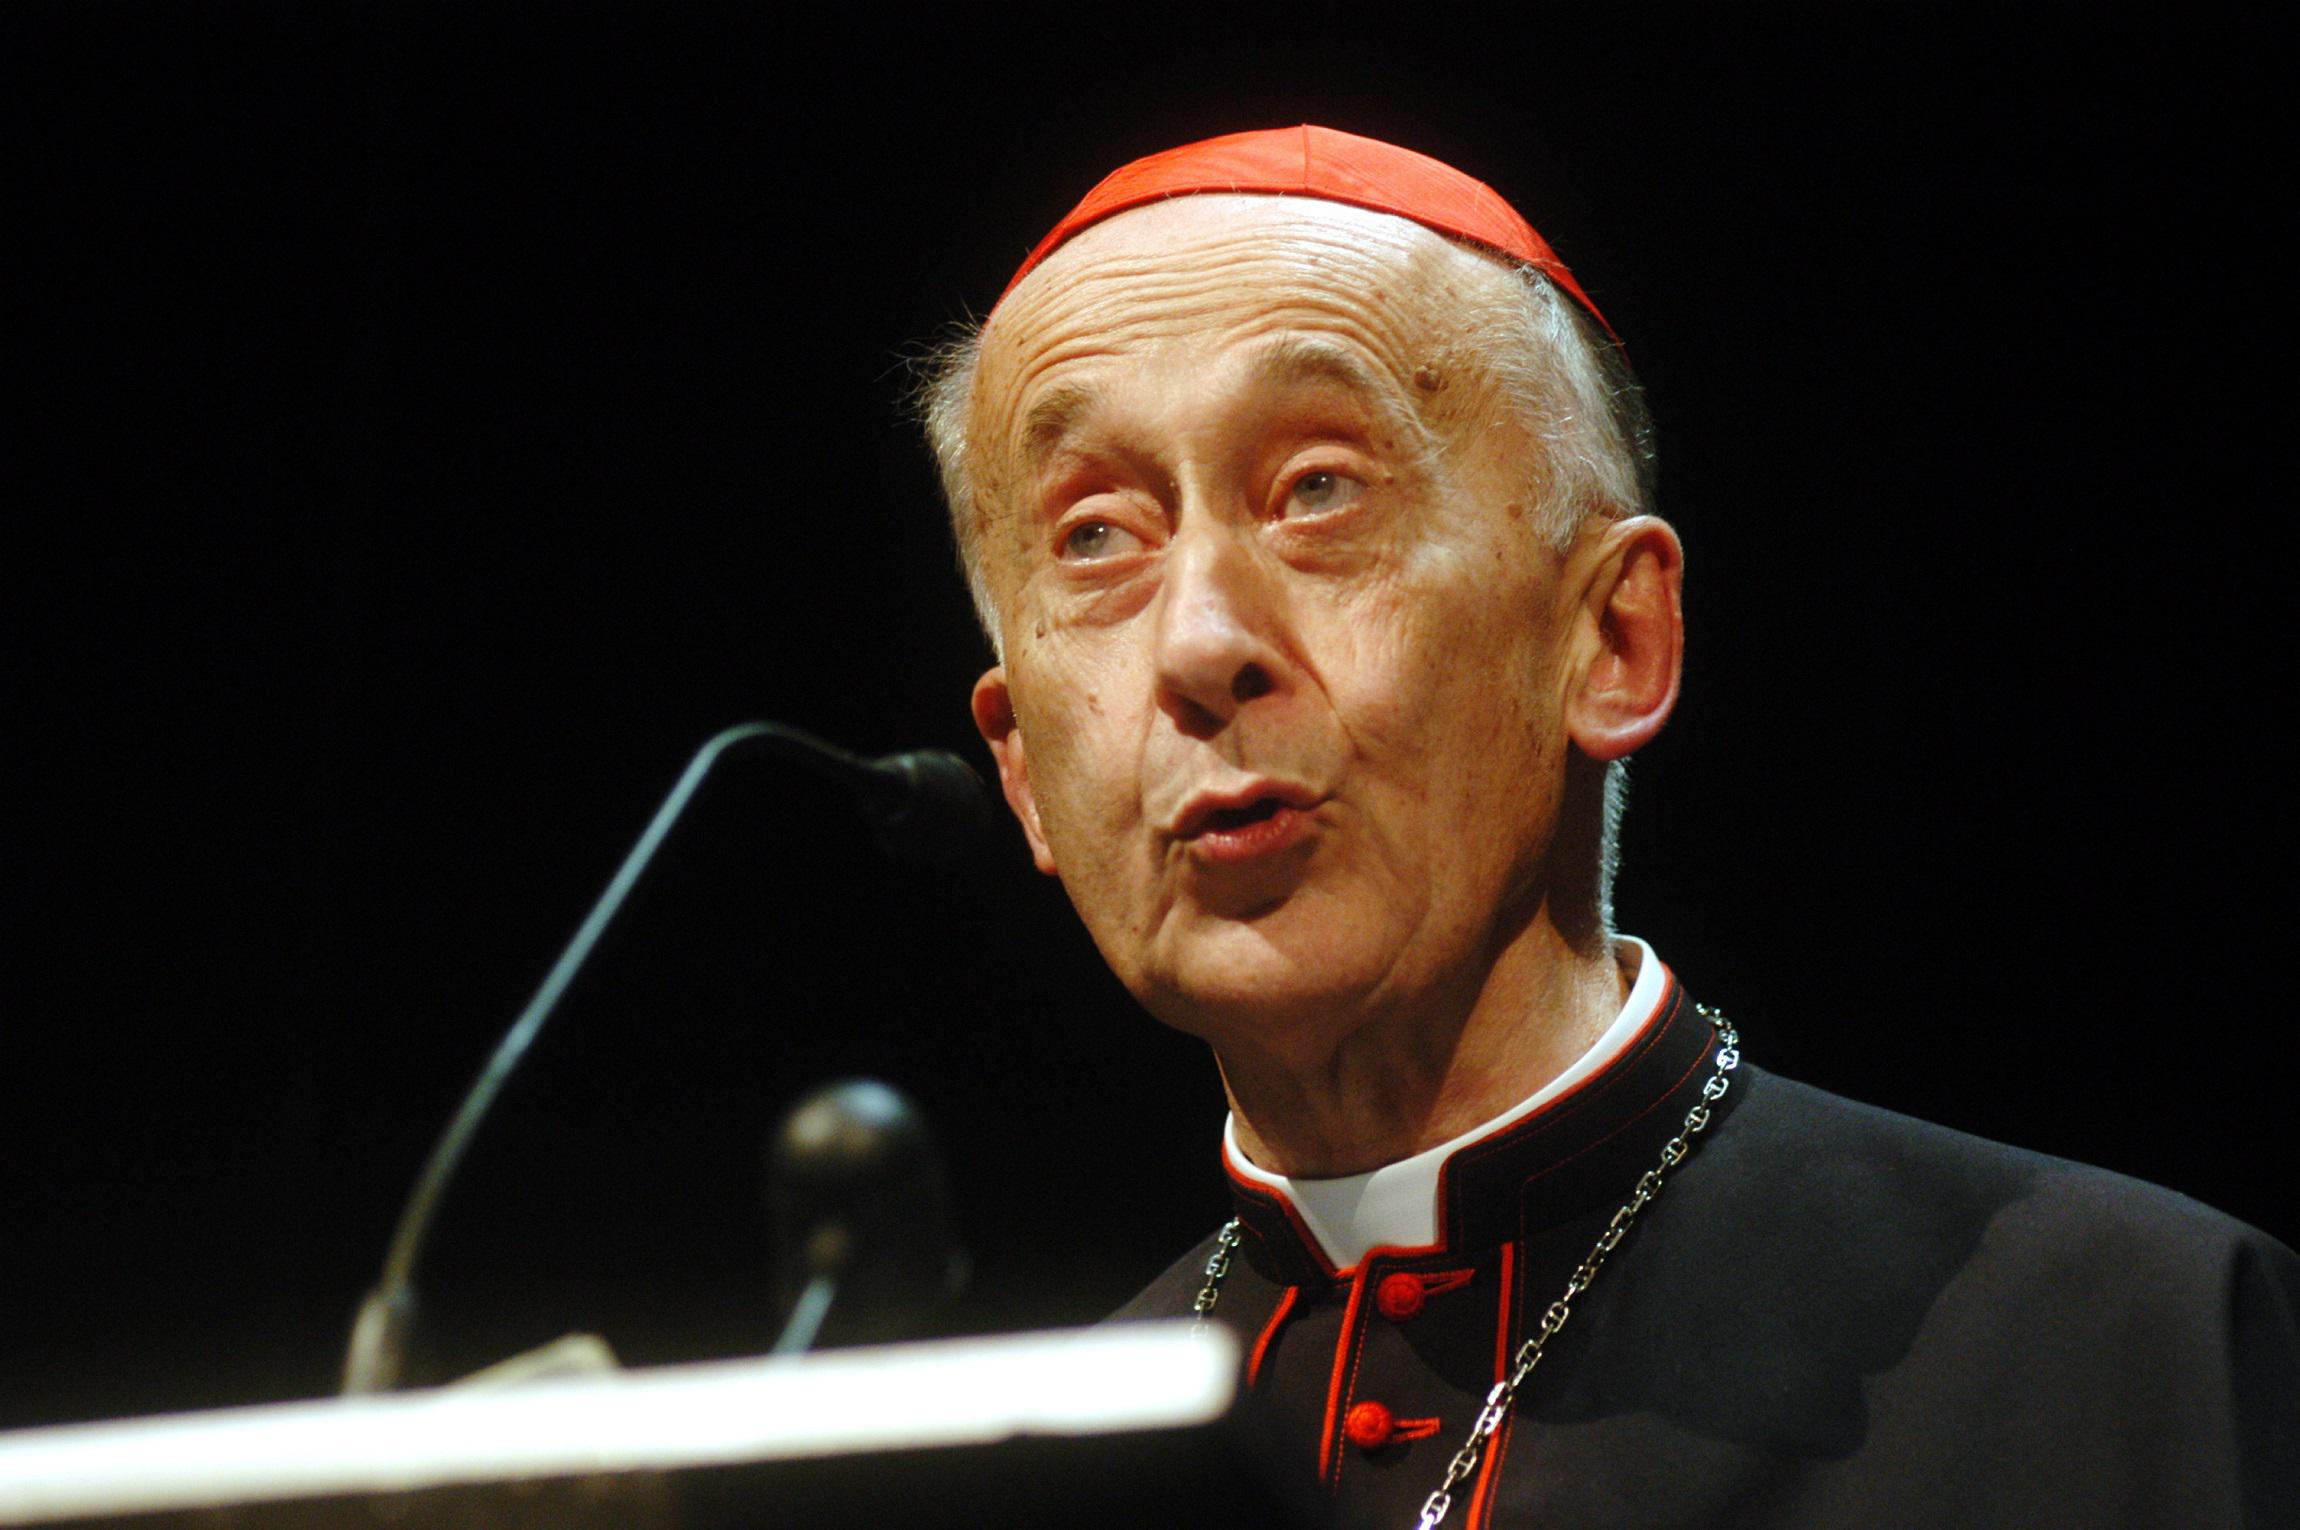 Il cardinale Camillo Ruini in terapia intensiva - Ecco tutto quello che sappiamo